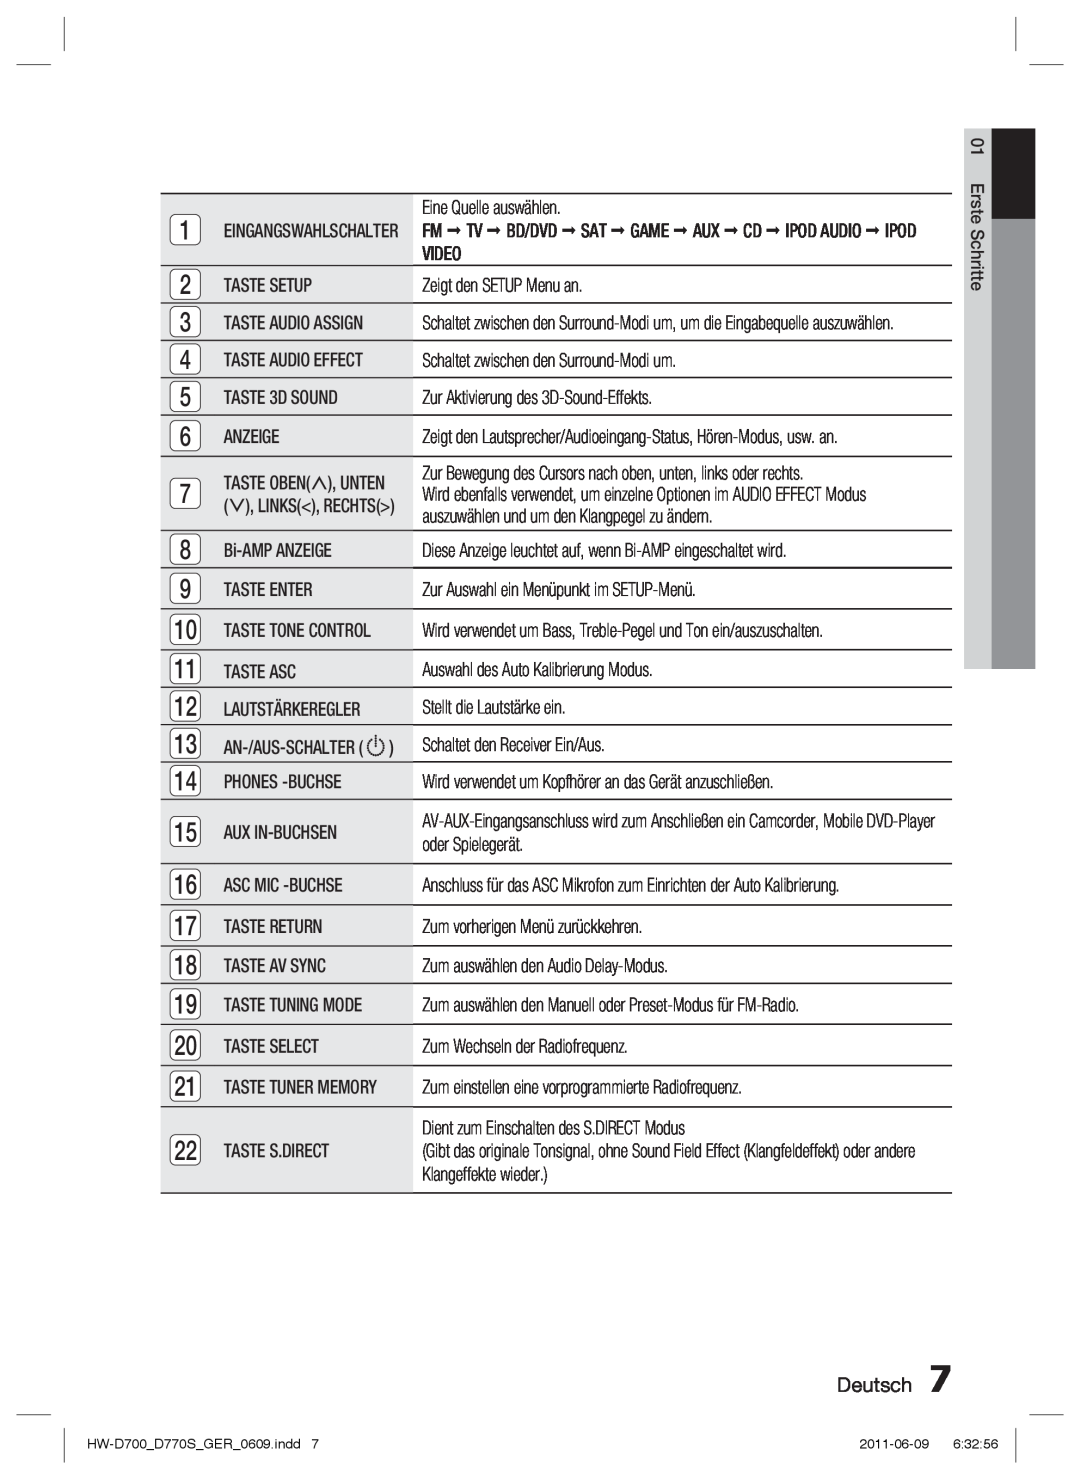 Samsung HW-D700/EN, HW-D770S/EN manual Deutsch, Eine Quelle auswählen 